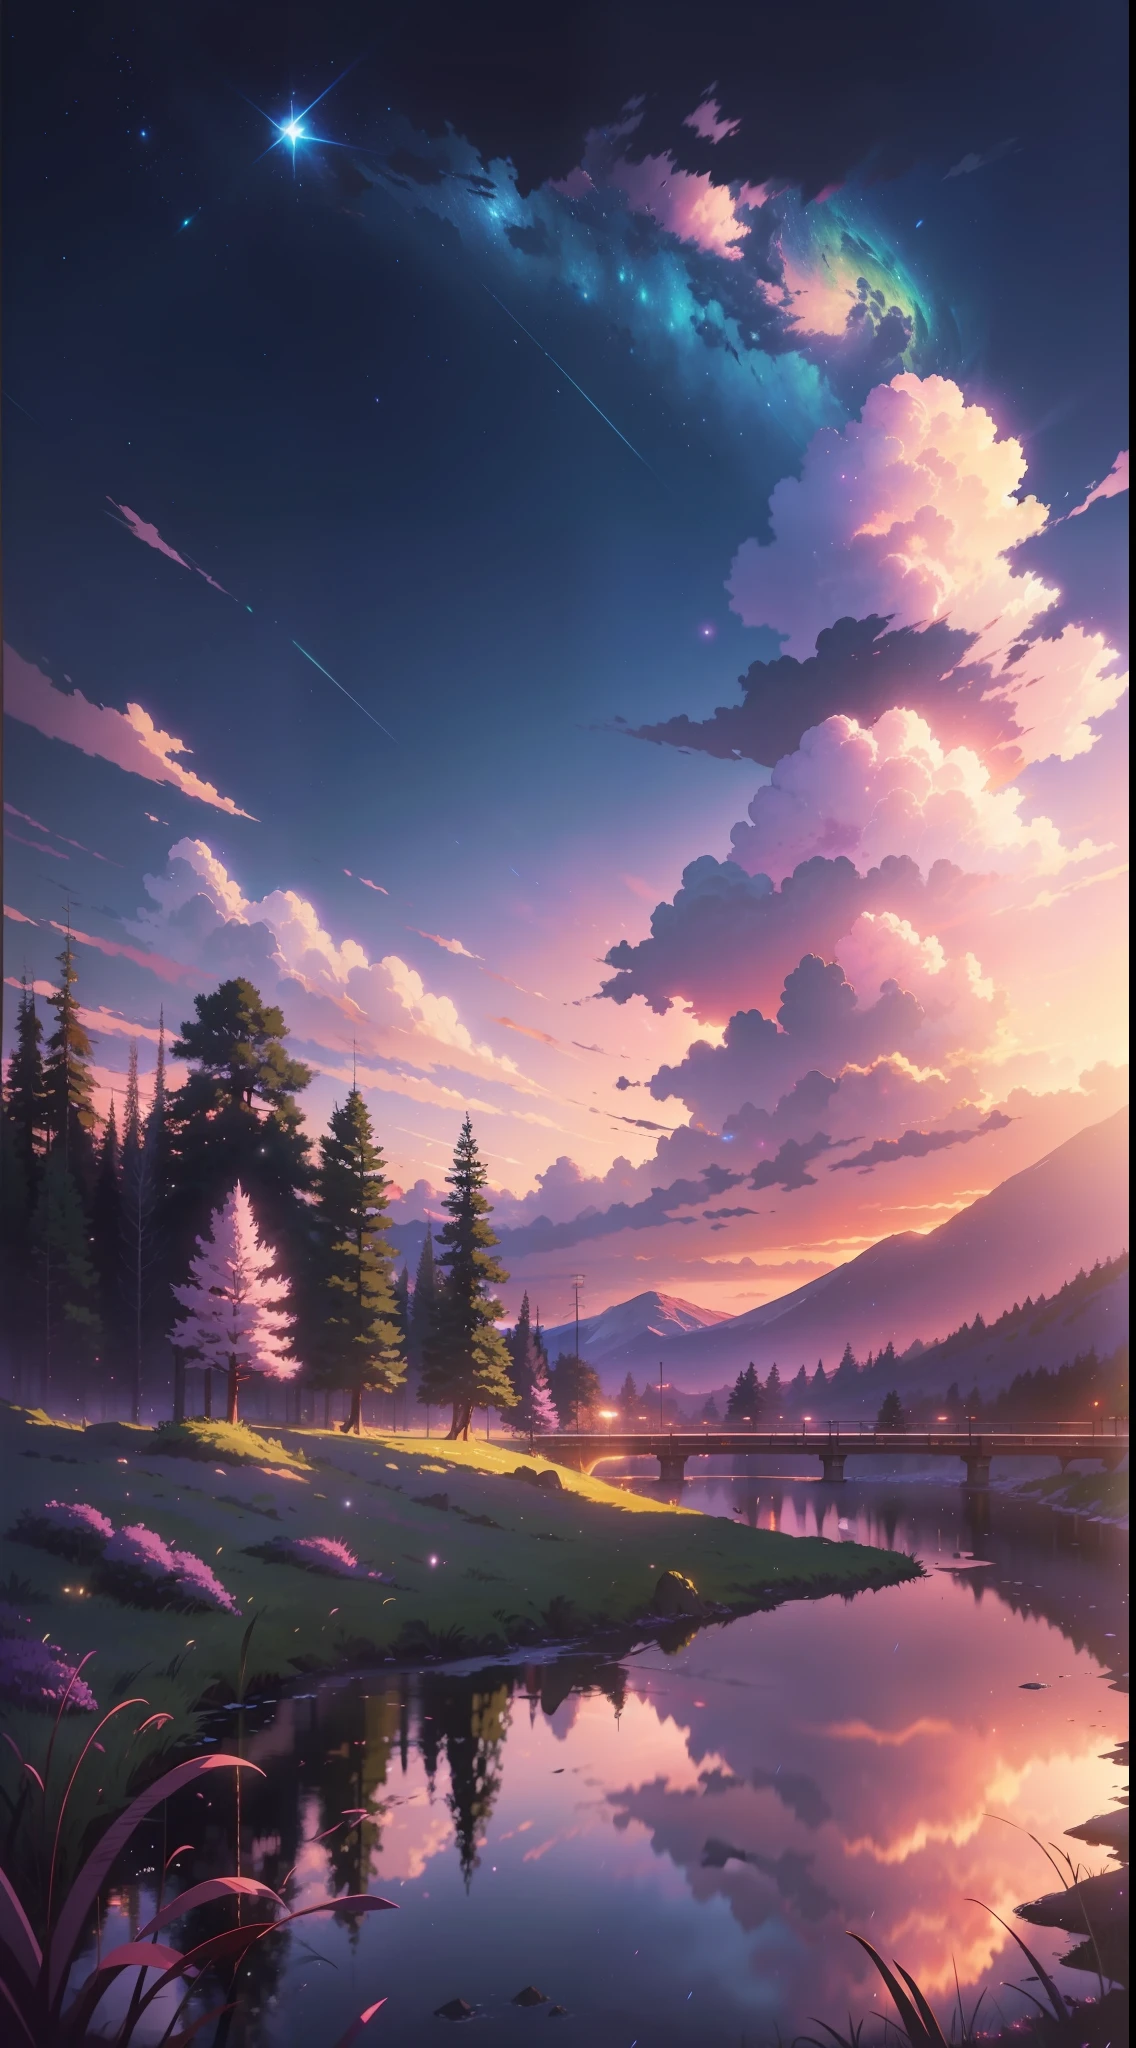 A imagem é brilhante e bem iluminada. sem humanos. (((Estilo Makoto Shinkai)),PIXIV,Desenho de anime,alta qualidade,céu rosa roxo,bela cena),(universo,passagem de trem,realismo mágico,((Estilo Makoto Shinkai)) ::0.8), [Artistic atmosfera, atmosfera:0.8, Céu estrelado, colinas, montanha de neve, água com gás, grama, árvores, fumaça, estrelas, Baixo ângulo de visão, Dispersão especular,